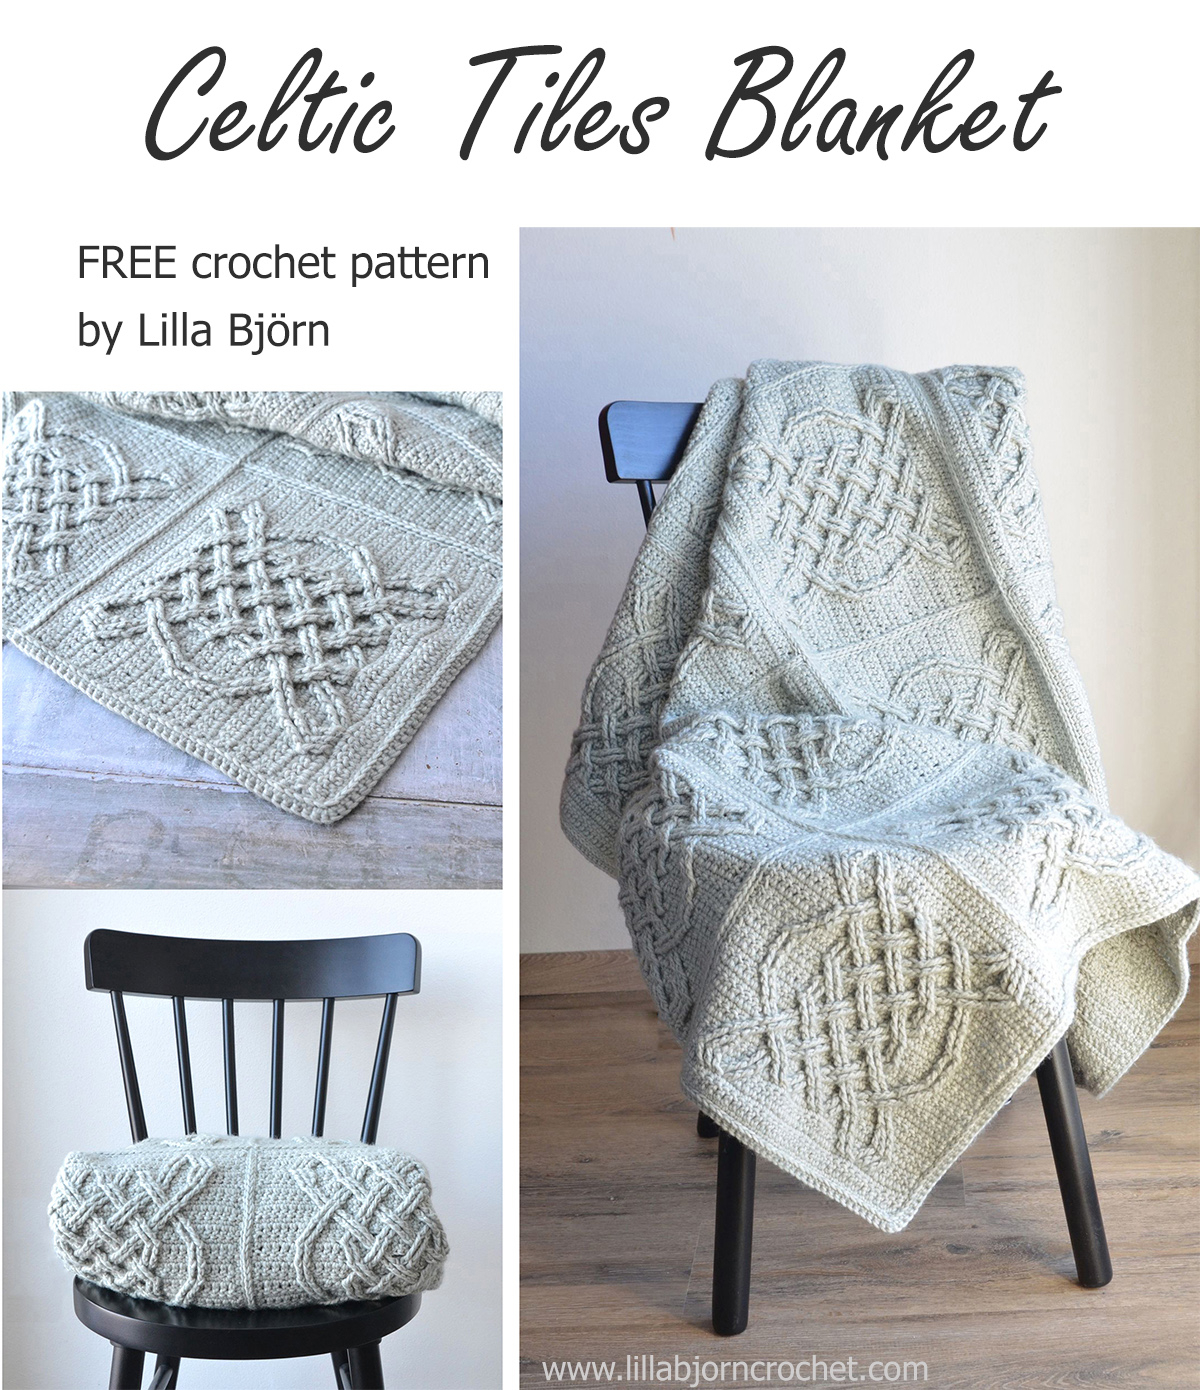 Crochet World Patterns Celtic Tiles Blanket Free Overlay Crochet Pattern Lillabjrns